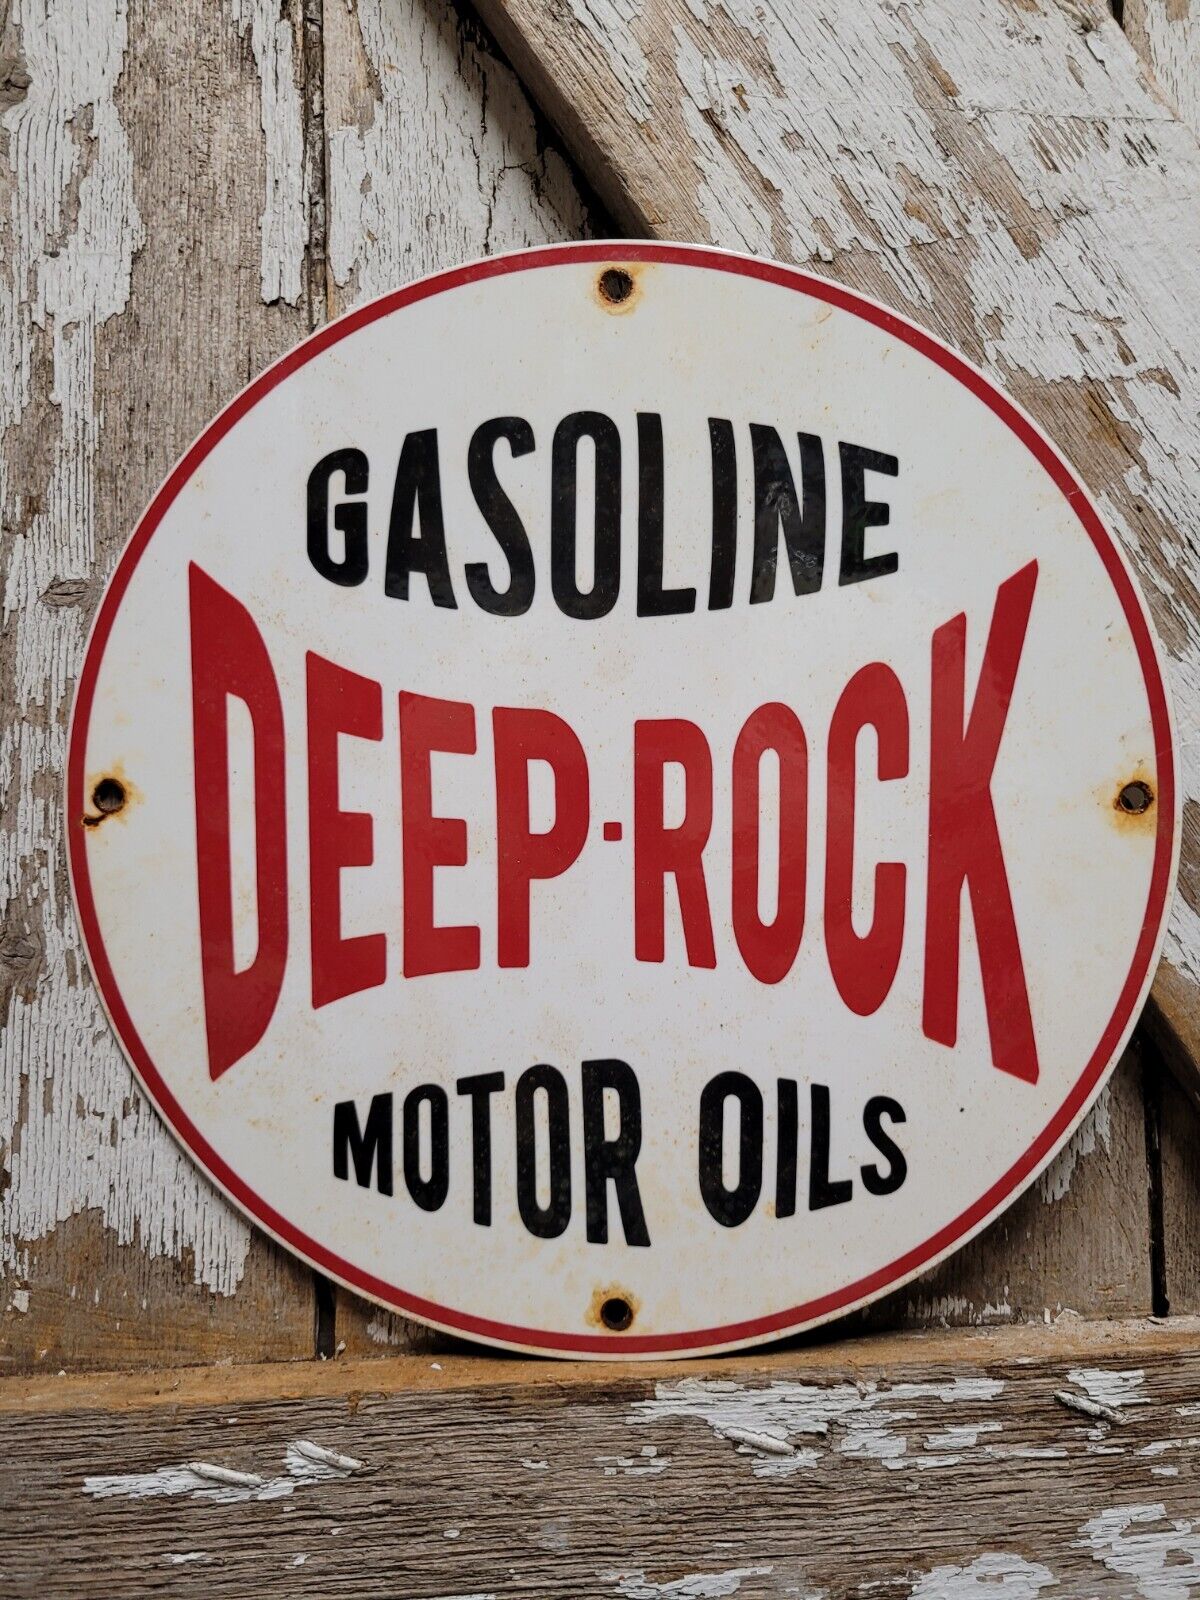 VINTAGE DEEP ROCK PORCELAIN SIGN CAR MOTOR OIL GASOLINE STATION SERVICE PUMP 12